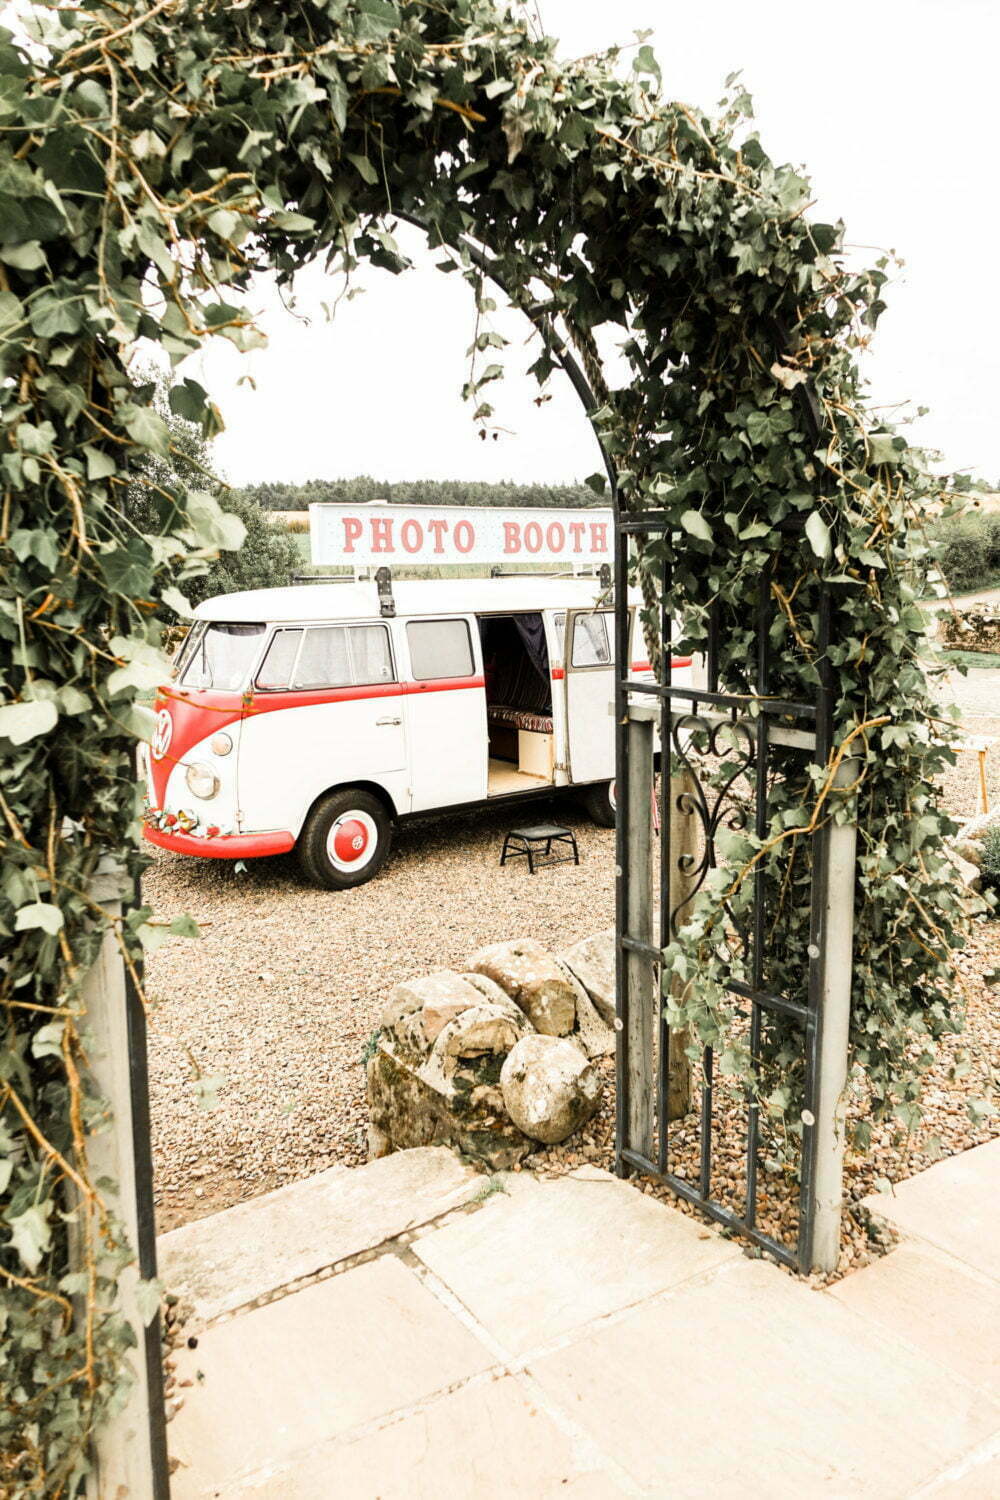 Vintage Campervan Photo Booth at Rustic Wedding Venue